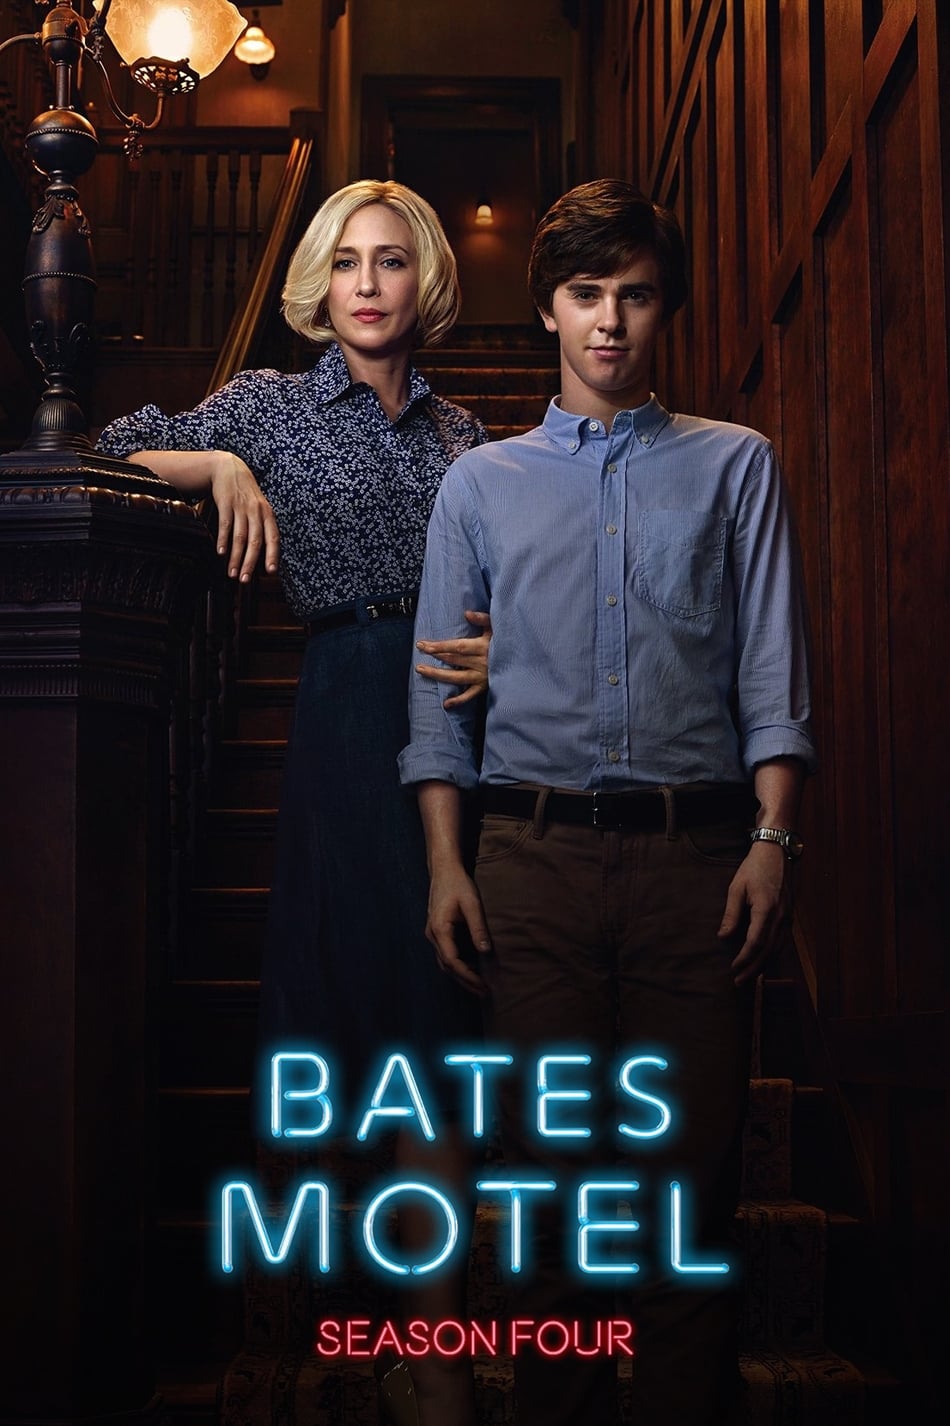 ดูหนังออนไลน์ฟรี Bates Motel Season 4 EP 4 เบทส์โมเต็ล ปี4 ตอนที่4